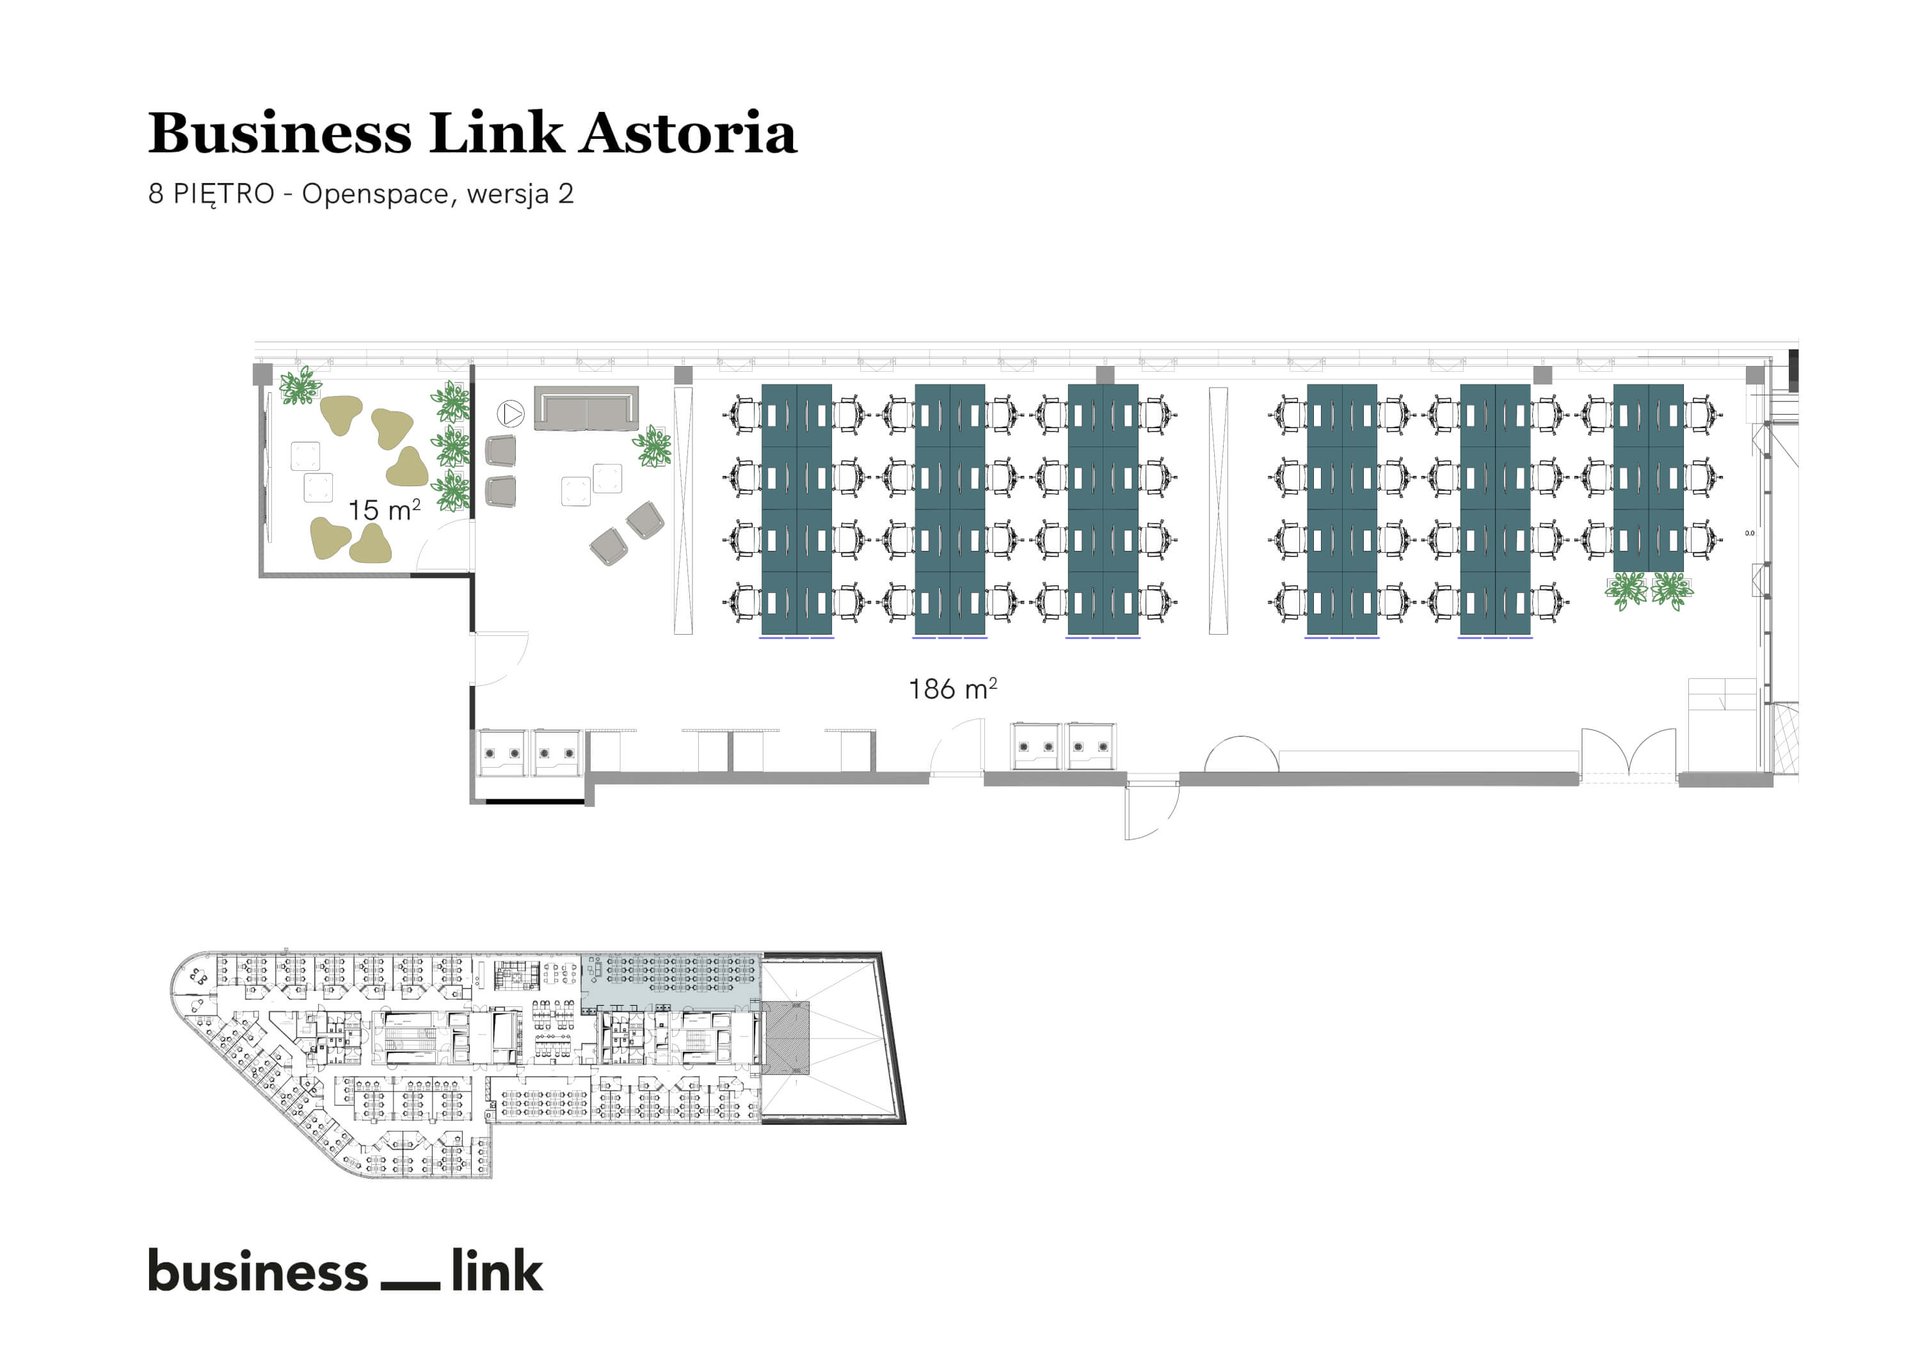 45 fős iroda itt: Business Link Astoria